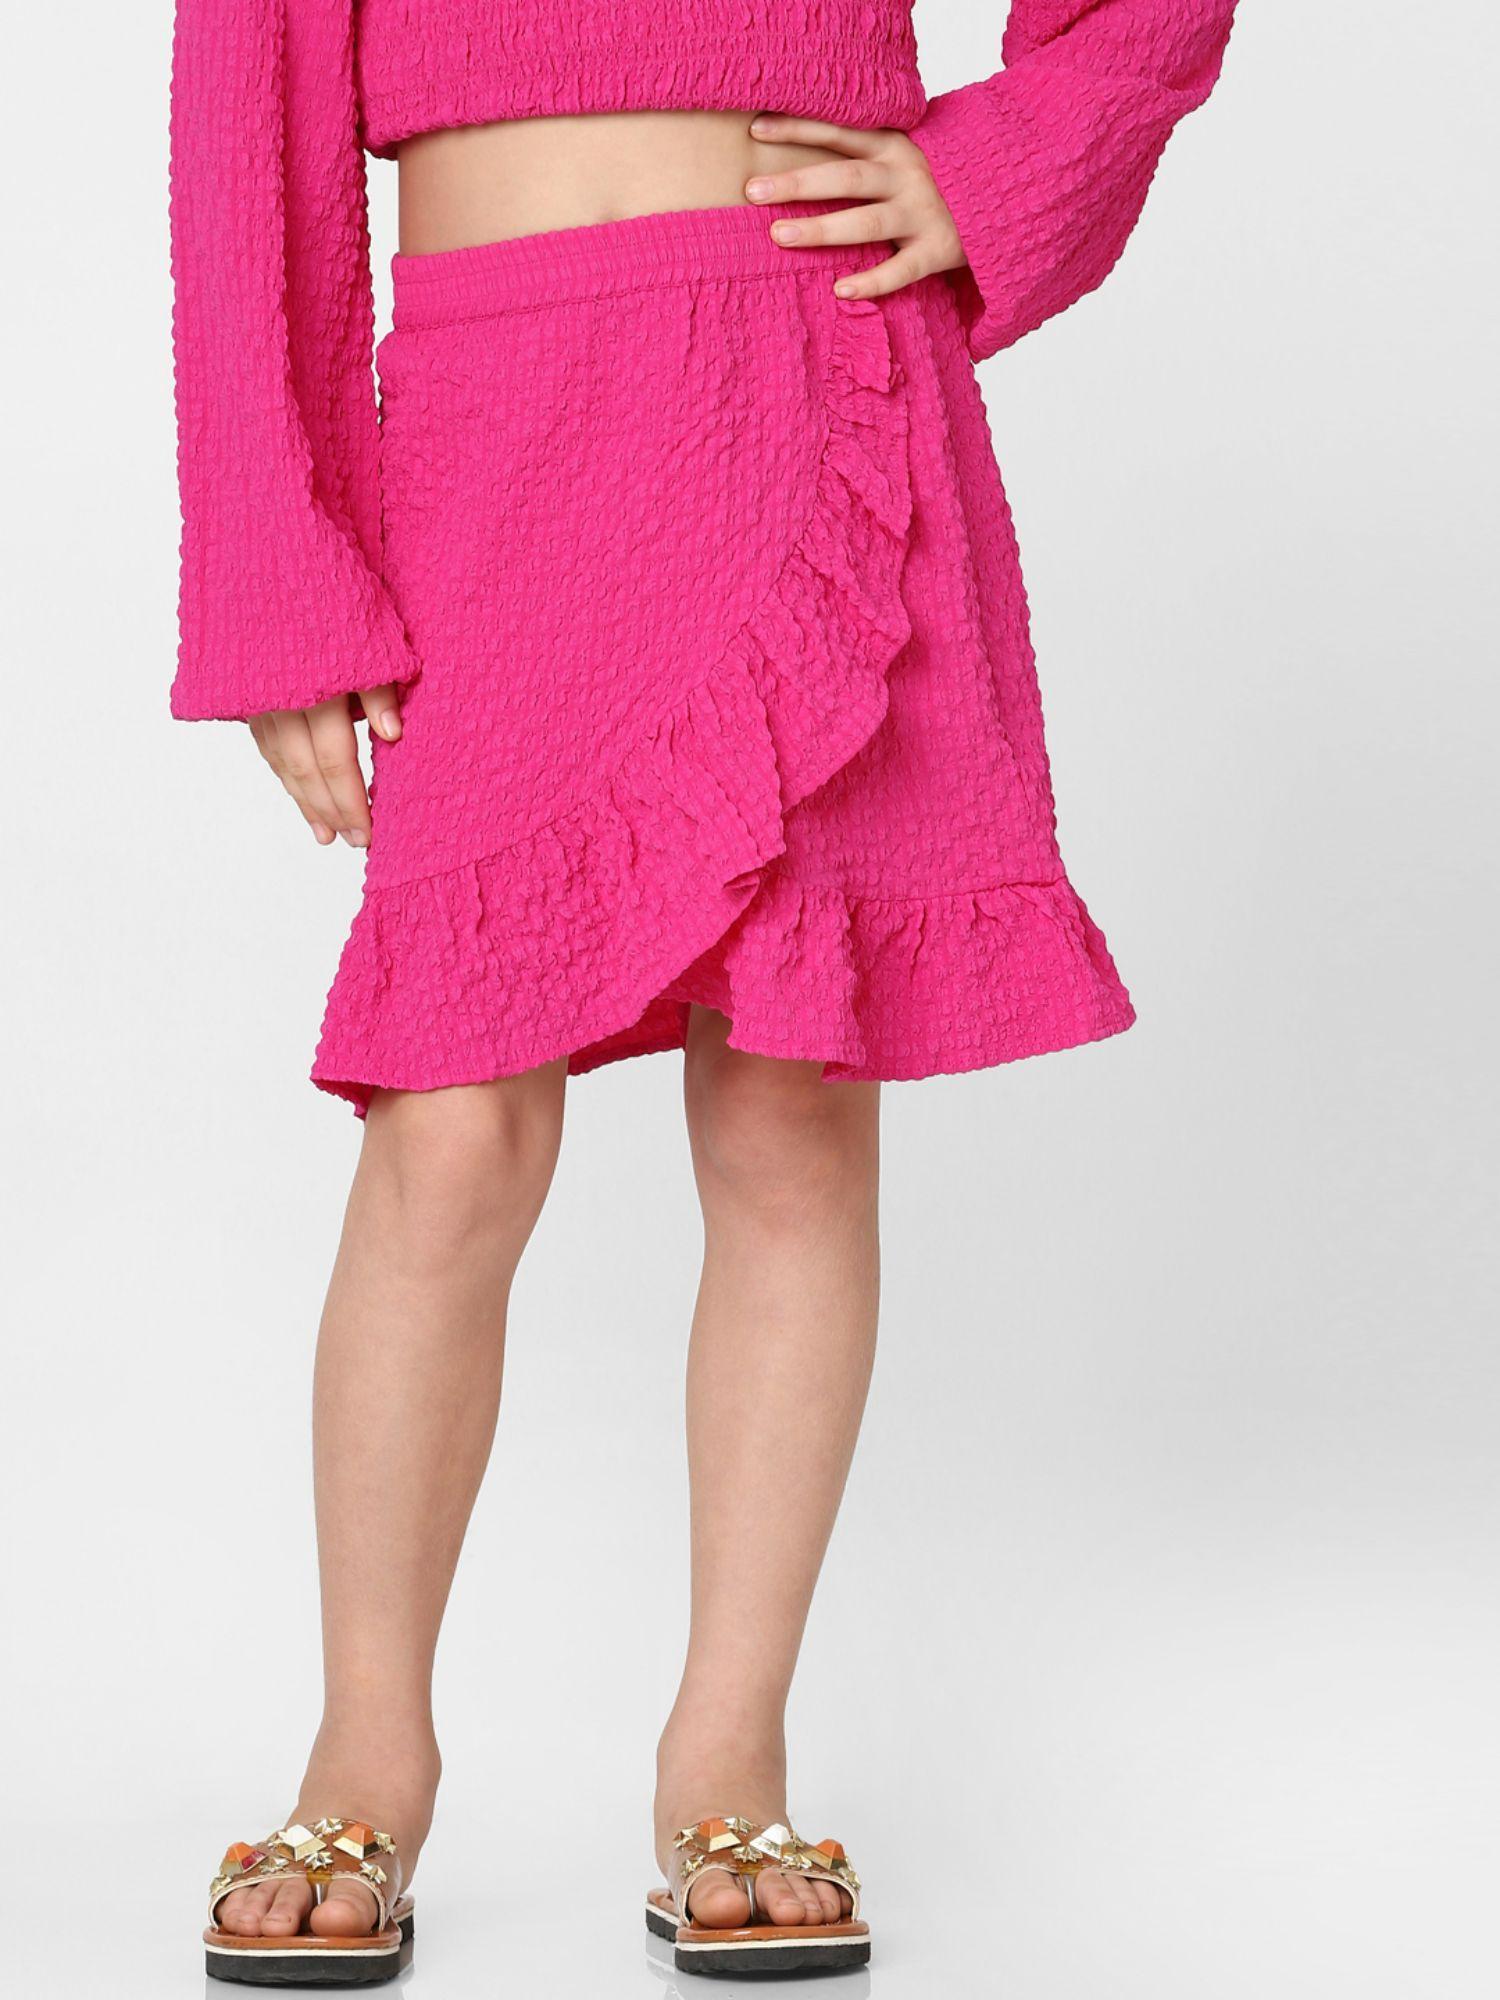 girls-textured-pink-skirt